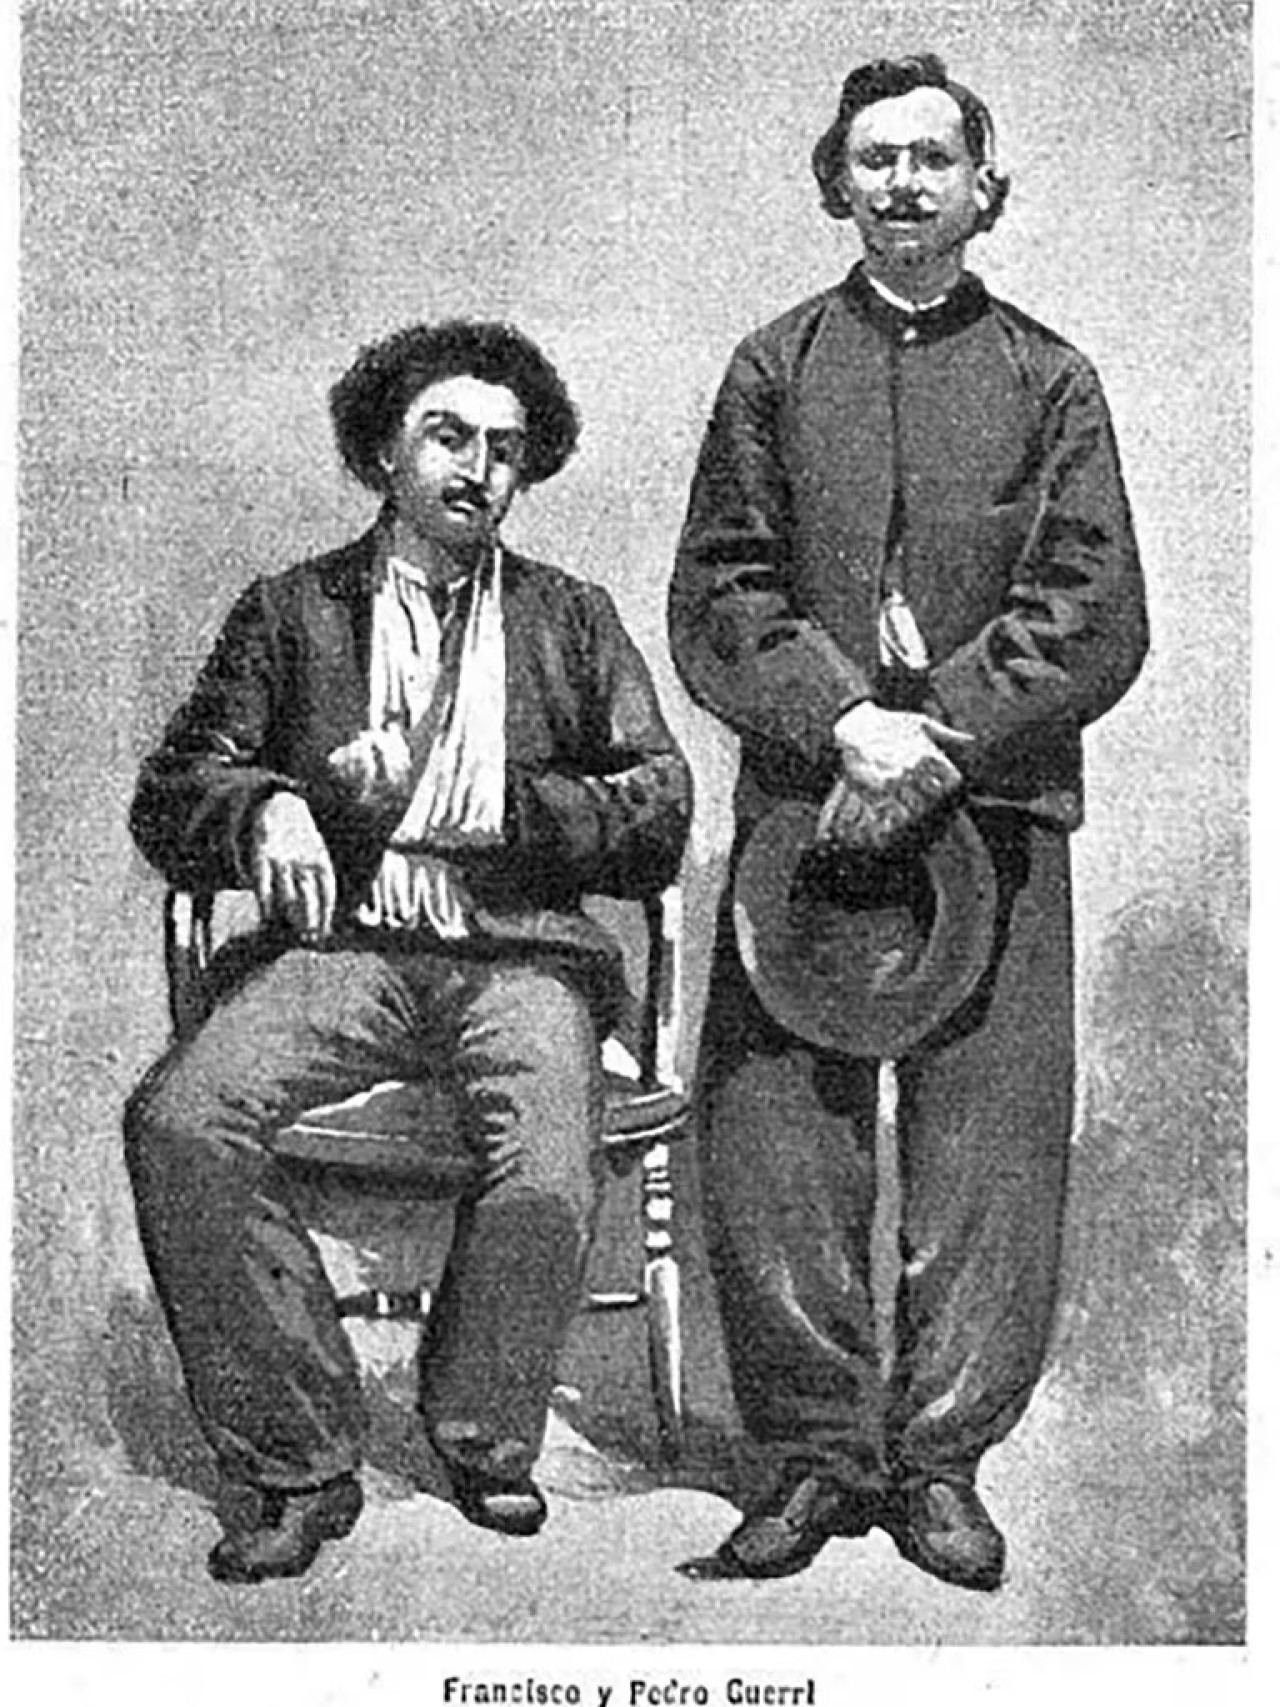 Francisco Güerri y Pedro Güerri, condenados por intentar asesinar a Sarmiento